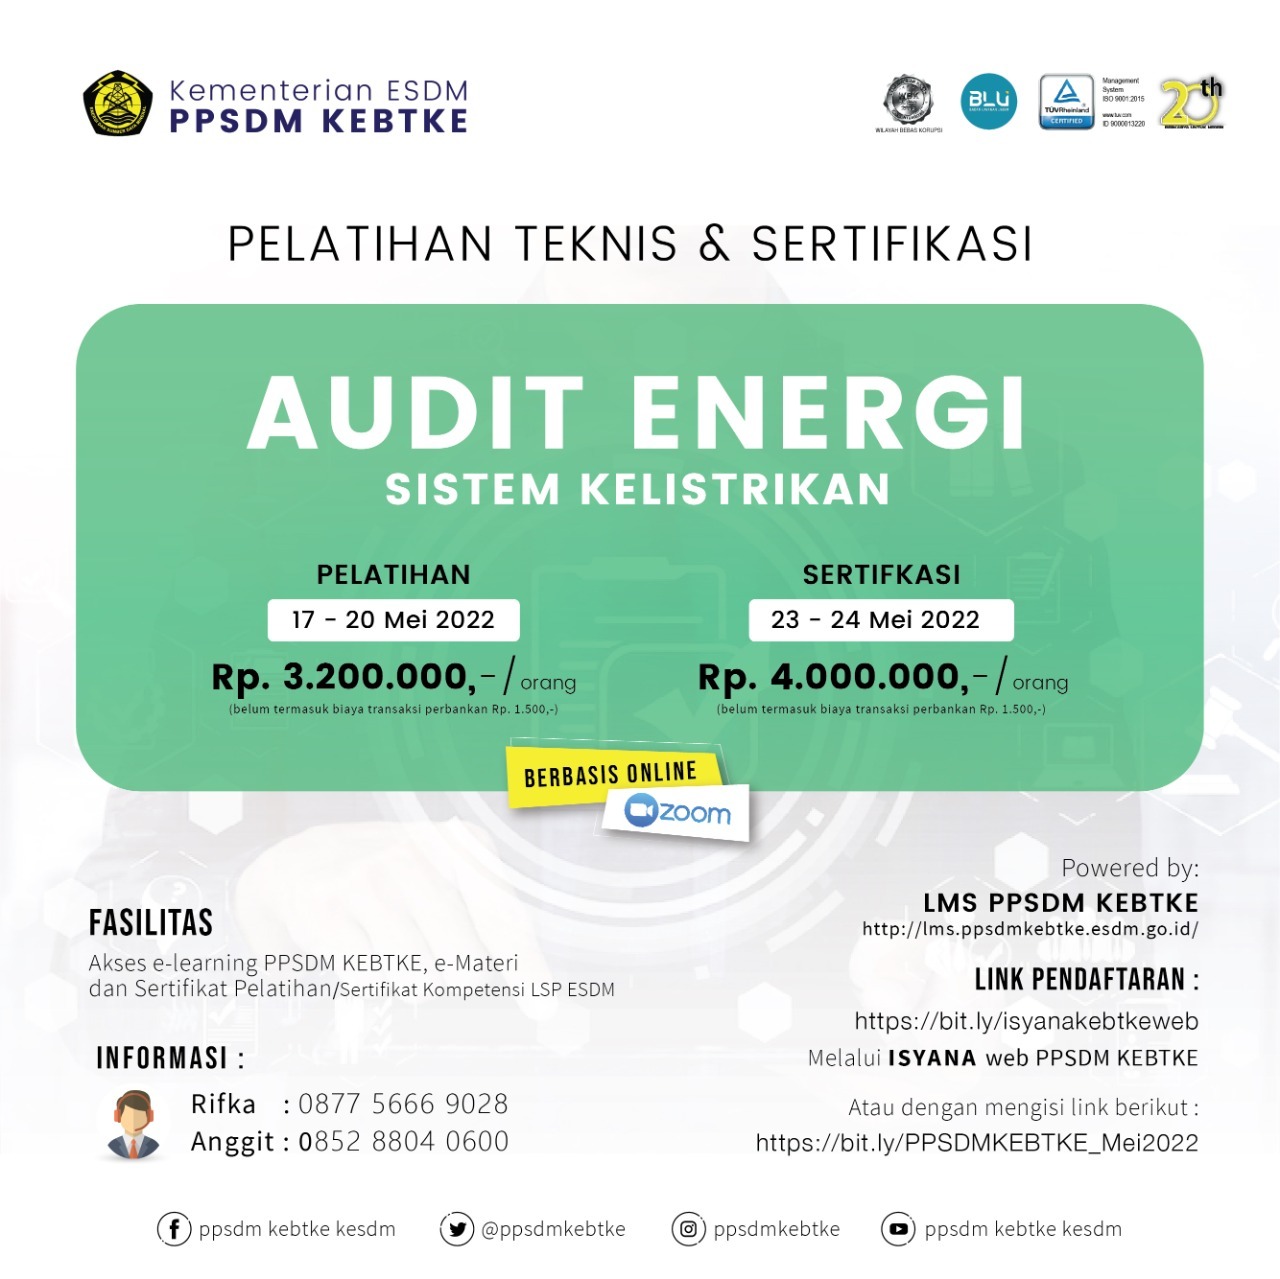 Jadwal Pelatihan dan Sertifikasi Auditor Energi 17 - 24 Mei 2022